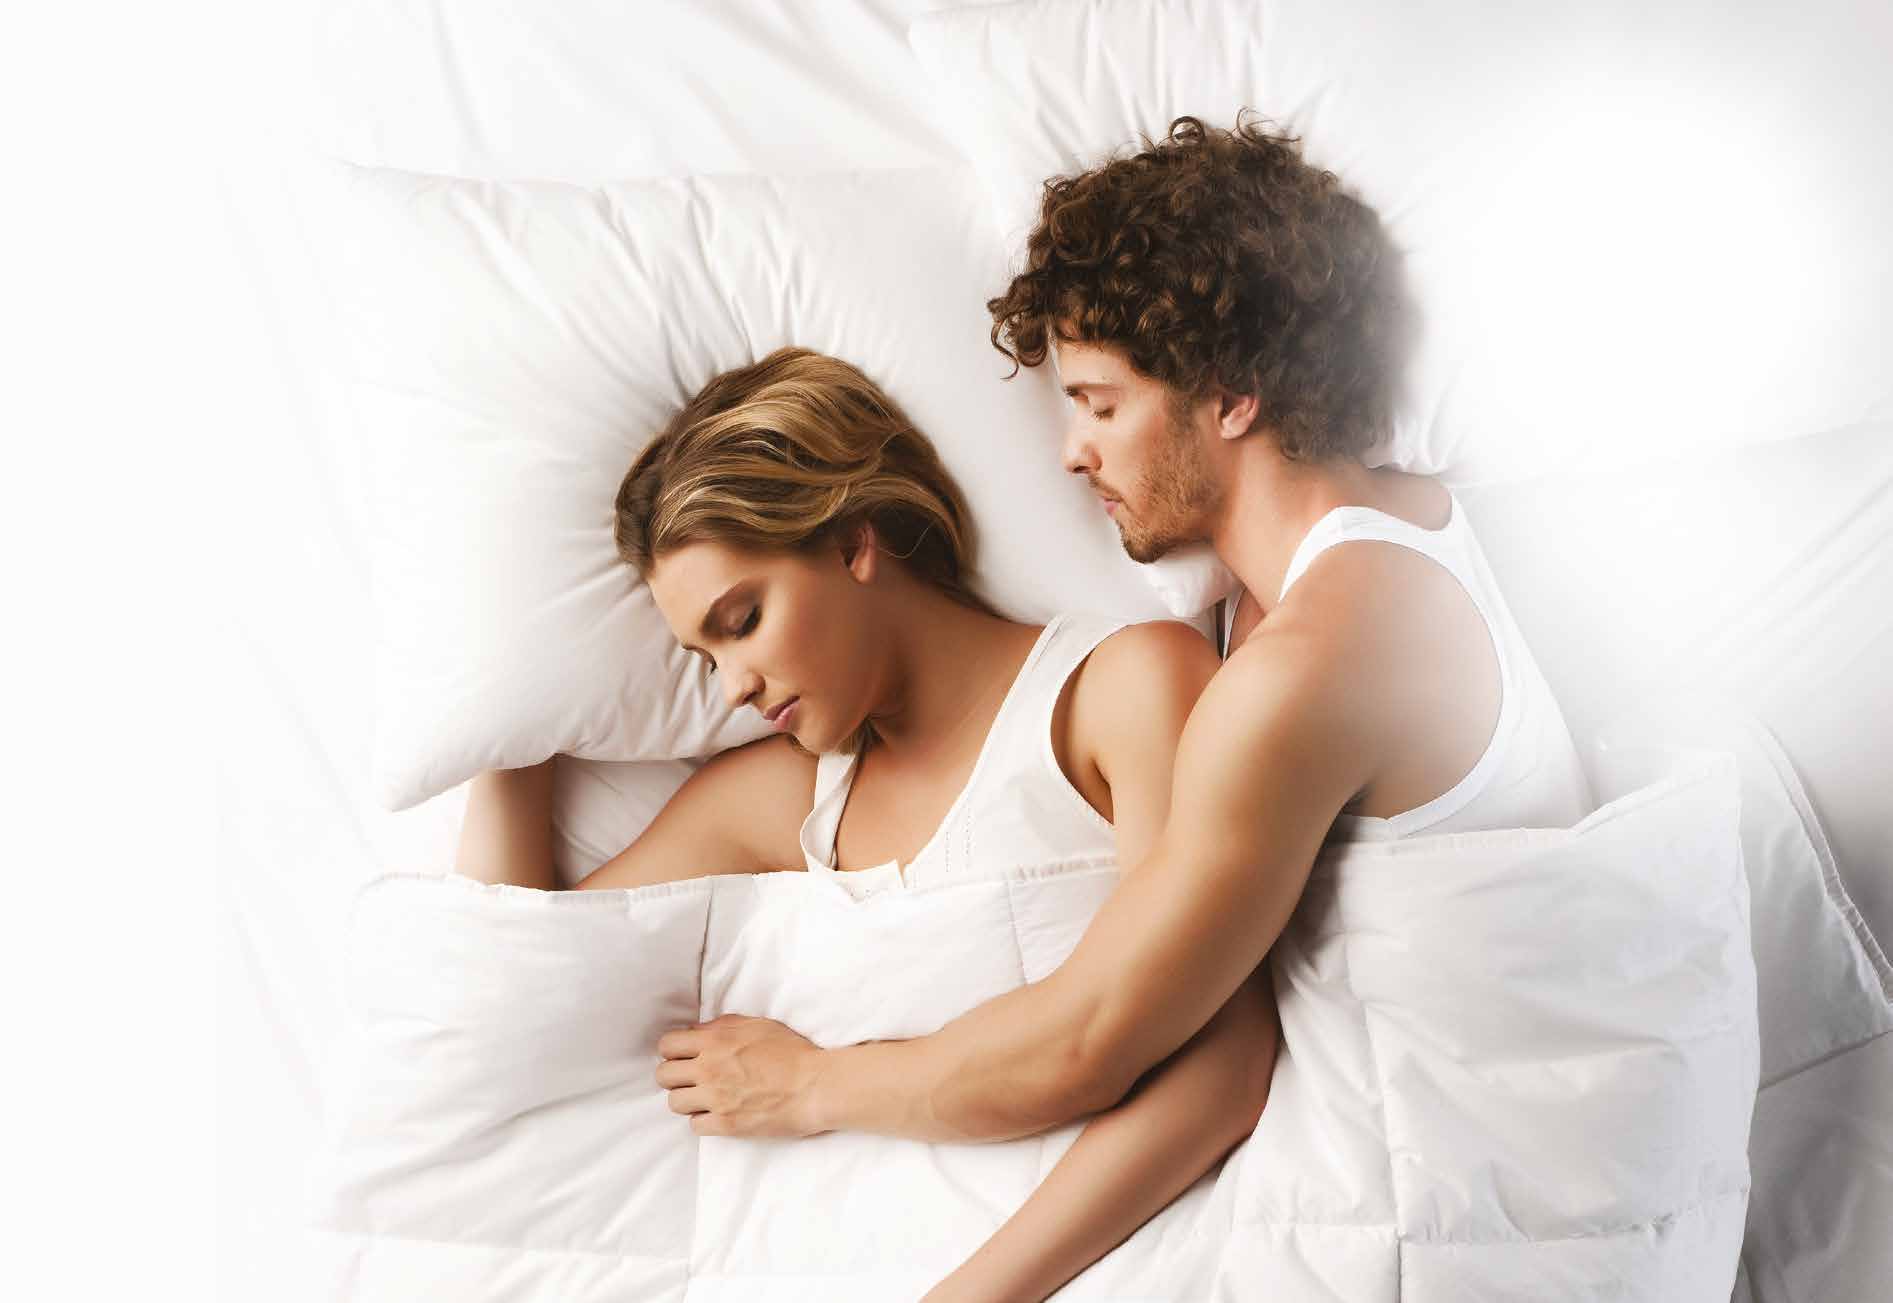 Bu teknolojide; deneme var yanılma yok! Deneme yanılma yöntemiyle yatak seçme devri bitti. Sleep to Live Teknolojisi ile en son bilimsel kriterlere göre yatağınızı seçme rahatlığı geldi!